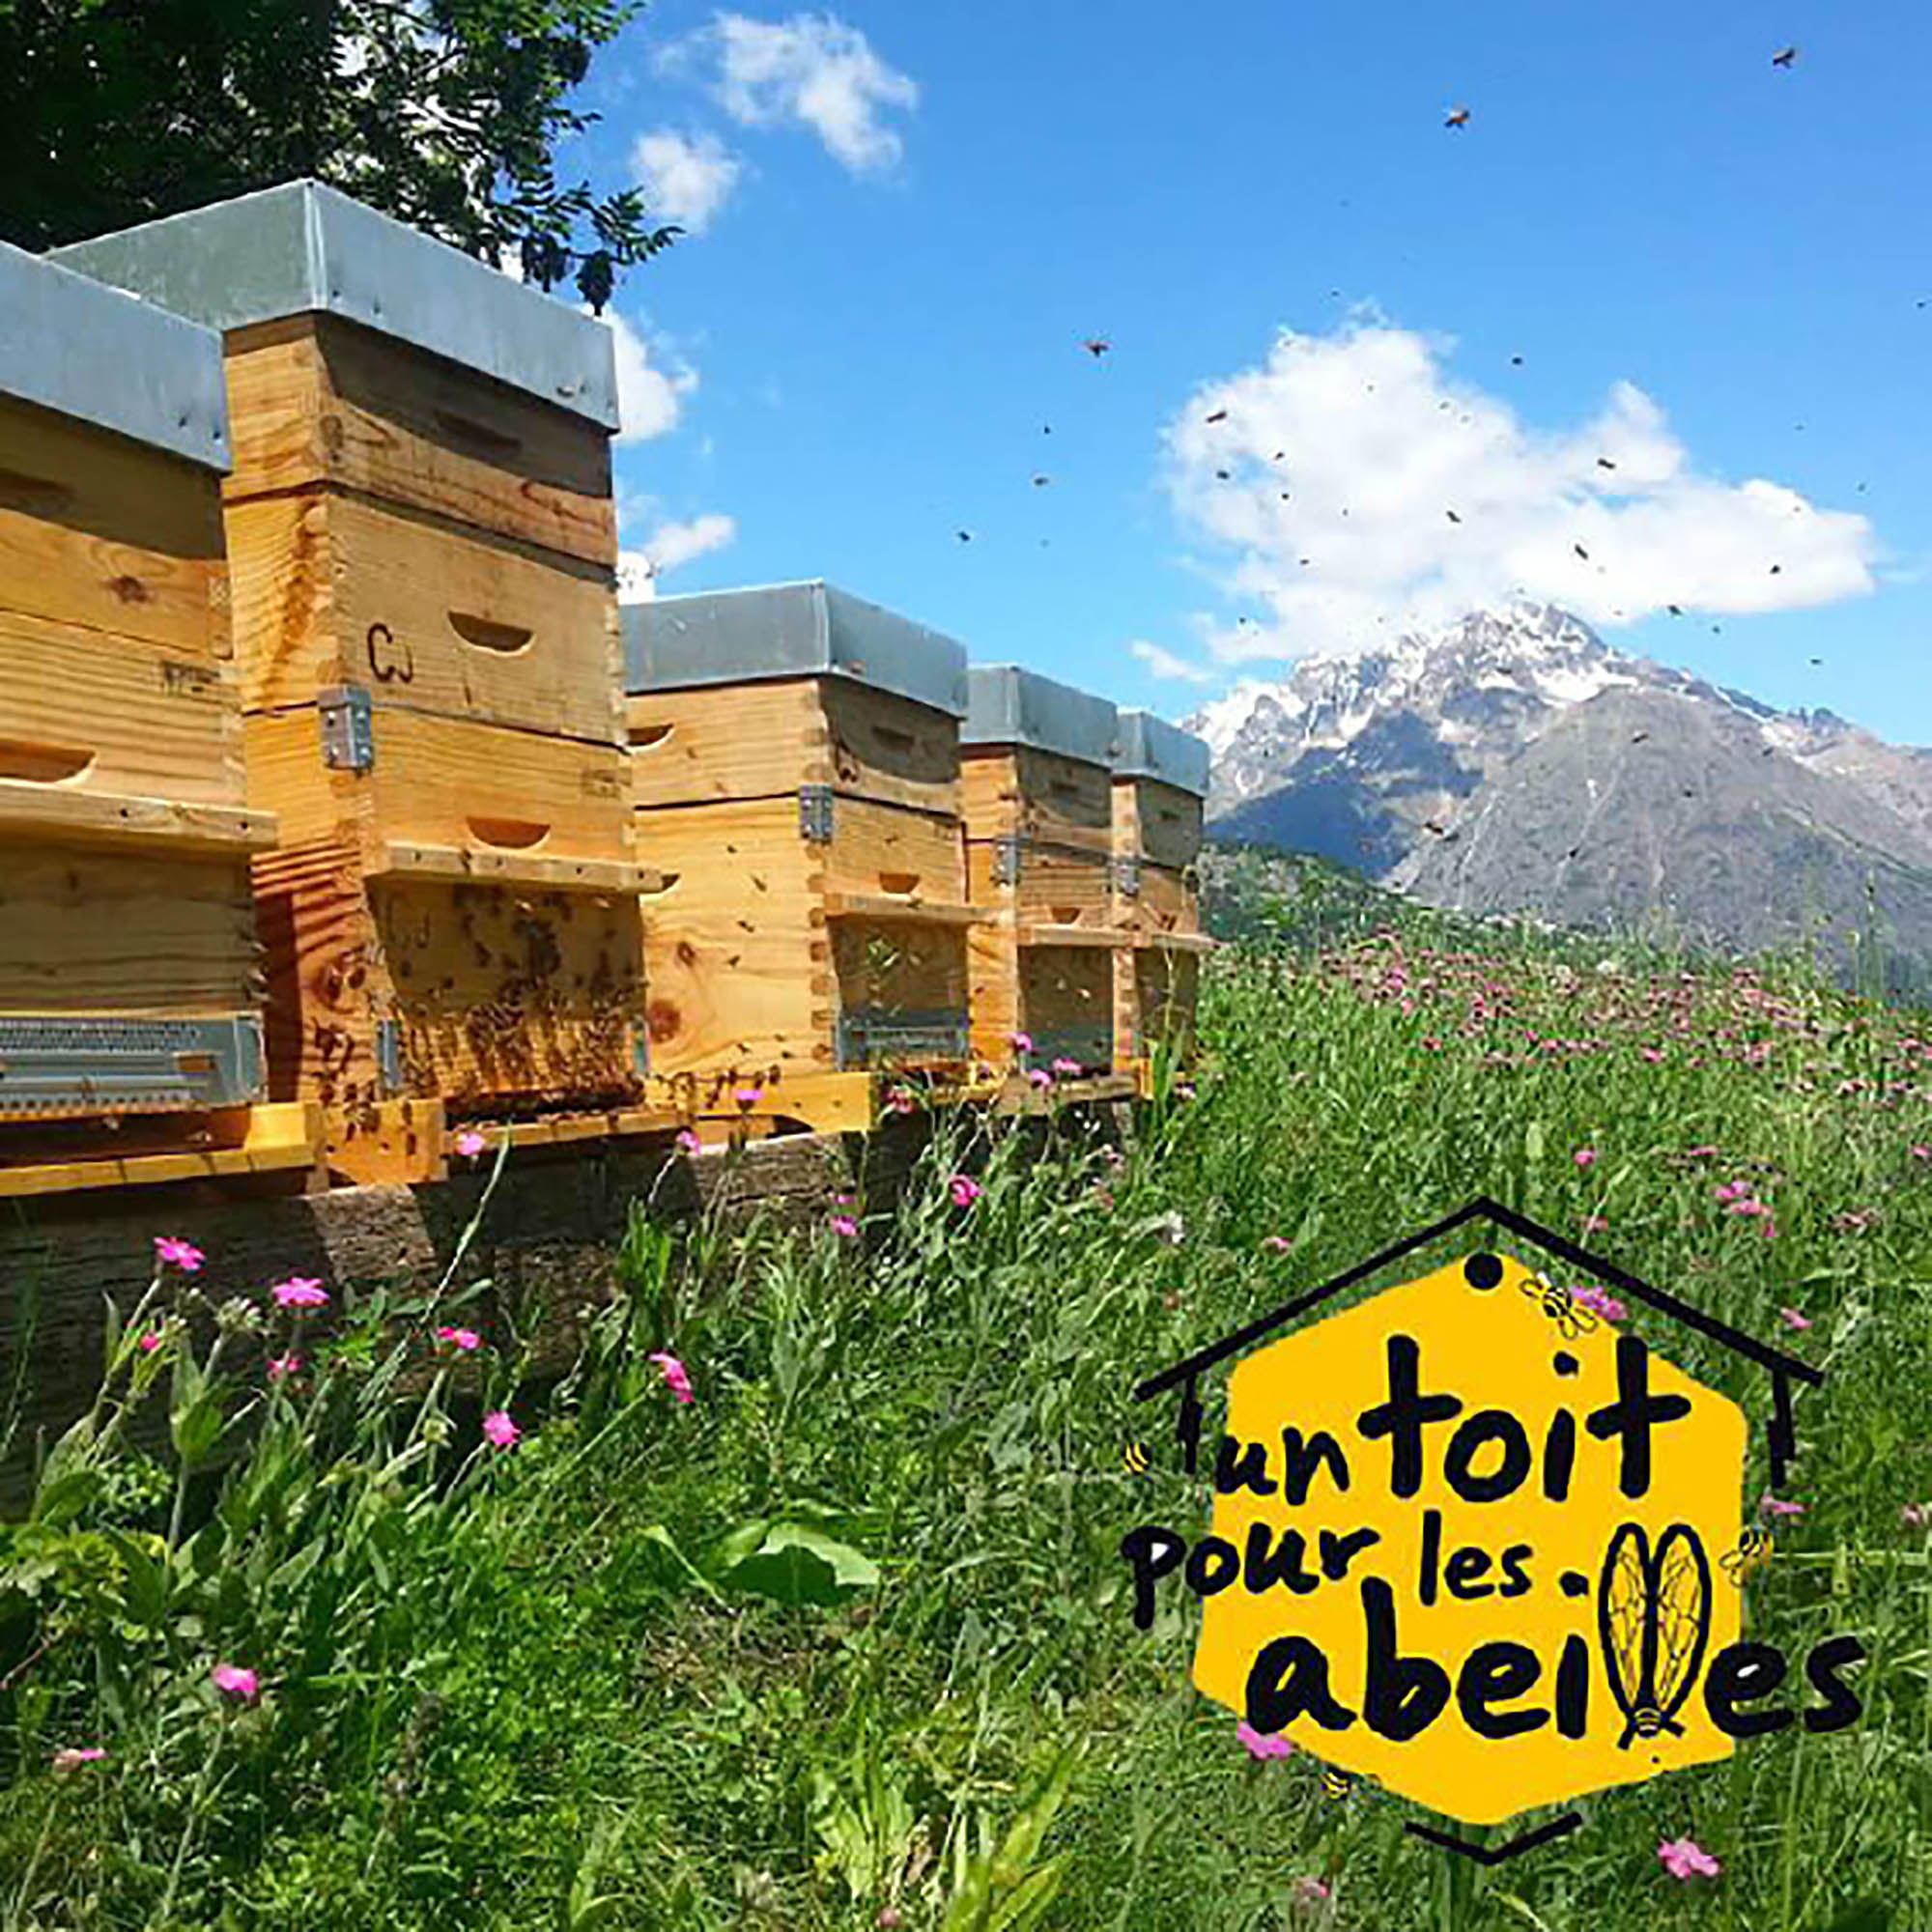 Nuxe hợp tác với tổ chức từ thiện “Un toit pour les abeilles” (một ngôi nhà dành cho loài ong), tài trợ cho các tổ ong nằm ở vùng Vosges của Pháp, để tạo ra các đàn ong mới và bảo tồn loài này